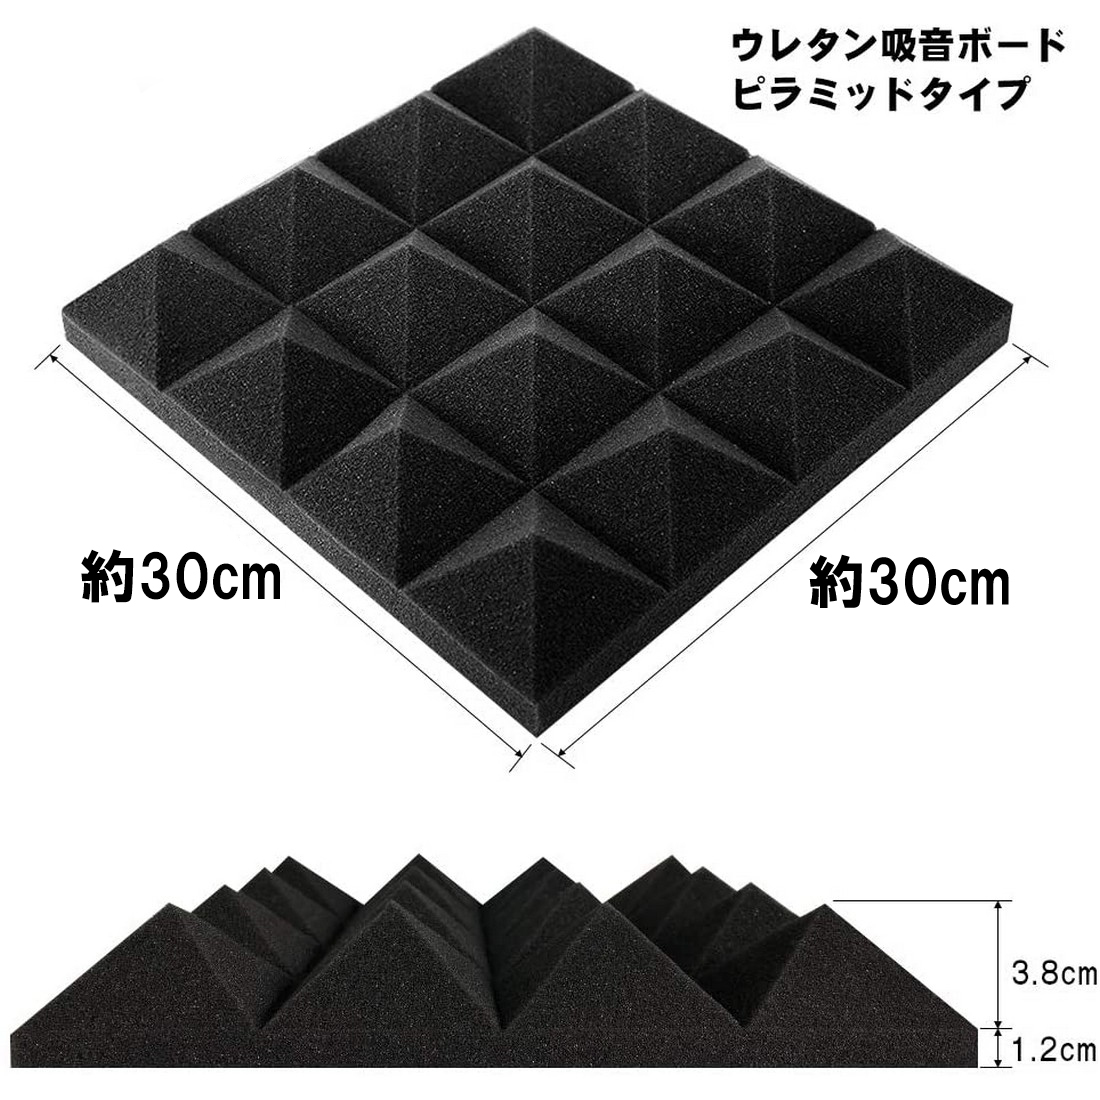 吸音材 防音材 ウレタン 48枚セット 30*30cm 厚さ5cm ピラミッド 壁 難燃 無害 吸音対策 ブラック_画像6